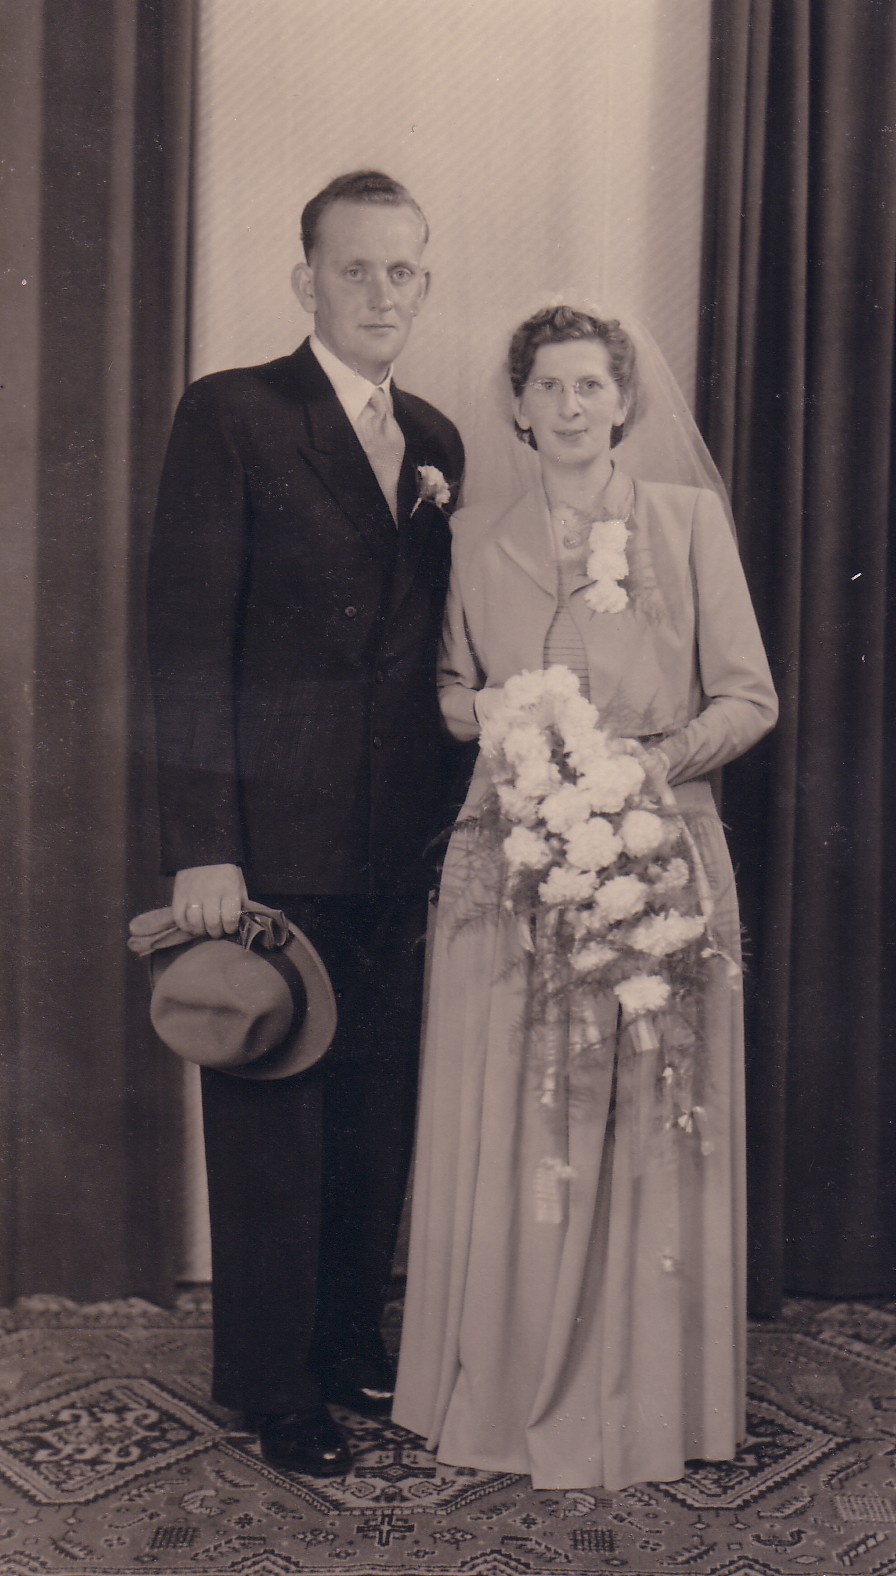 Huwelijk Albert Breedijk en Elizabeth Keijzer (1951)